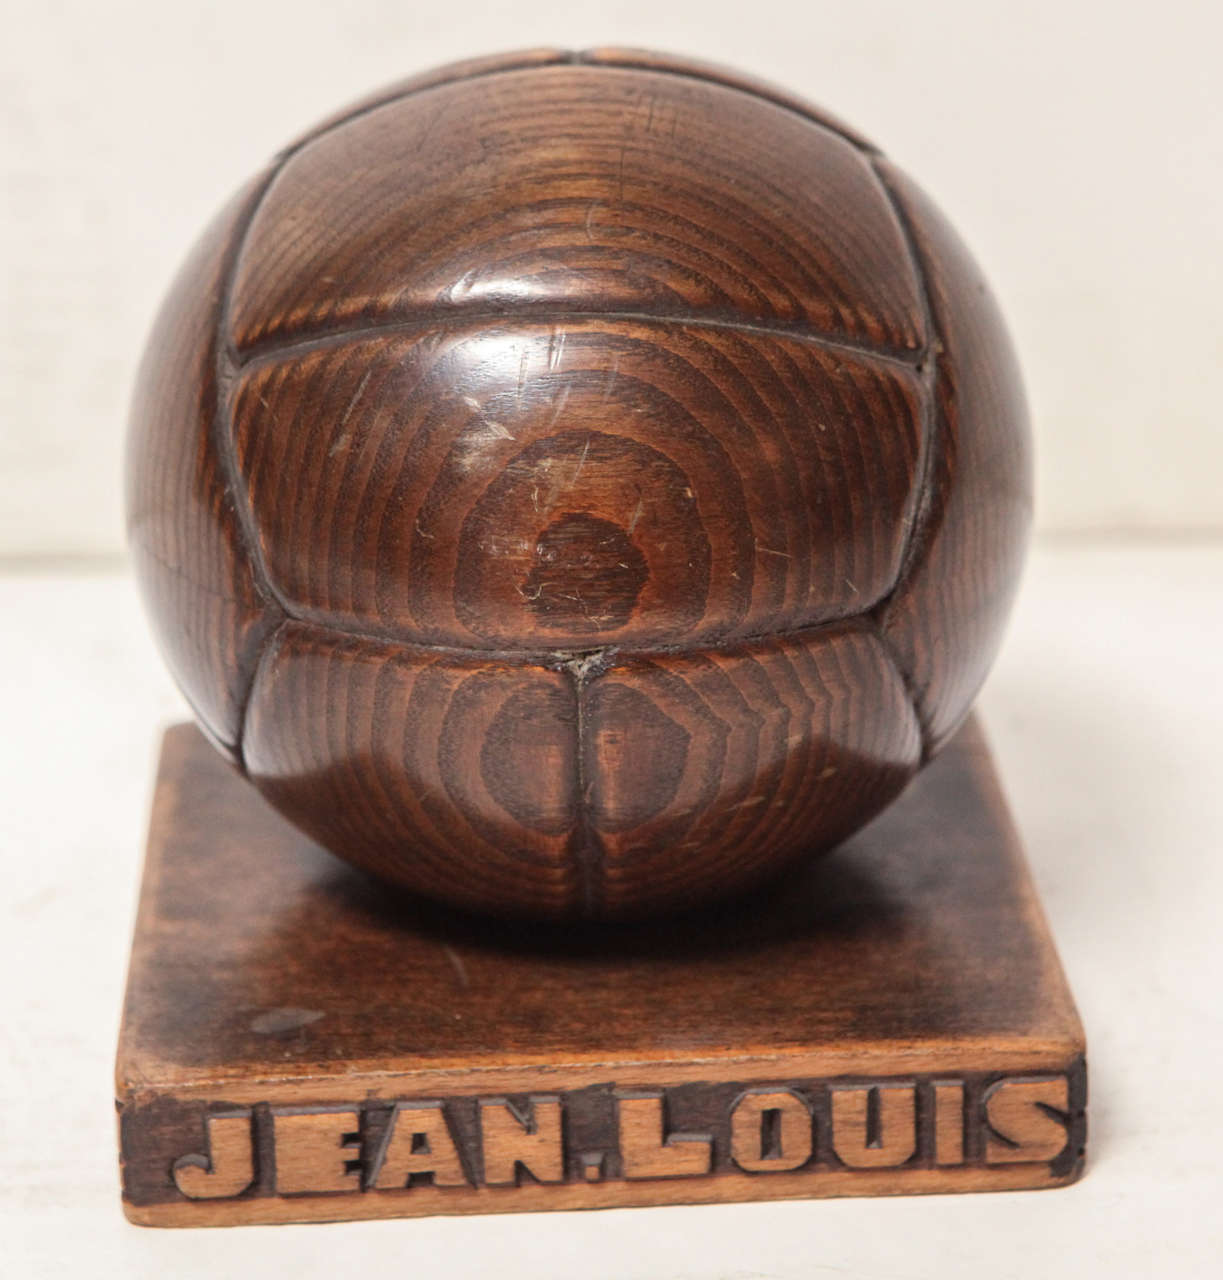 Französische handgeschnitzte Holzfußballbank. Eine Seite des Sockels ist mit dem Namen 